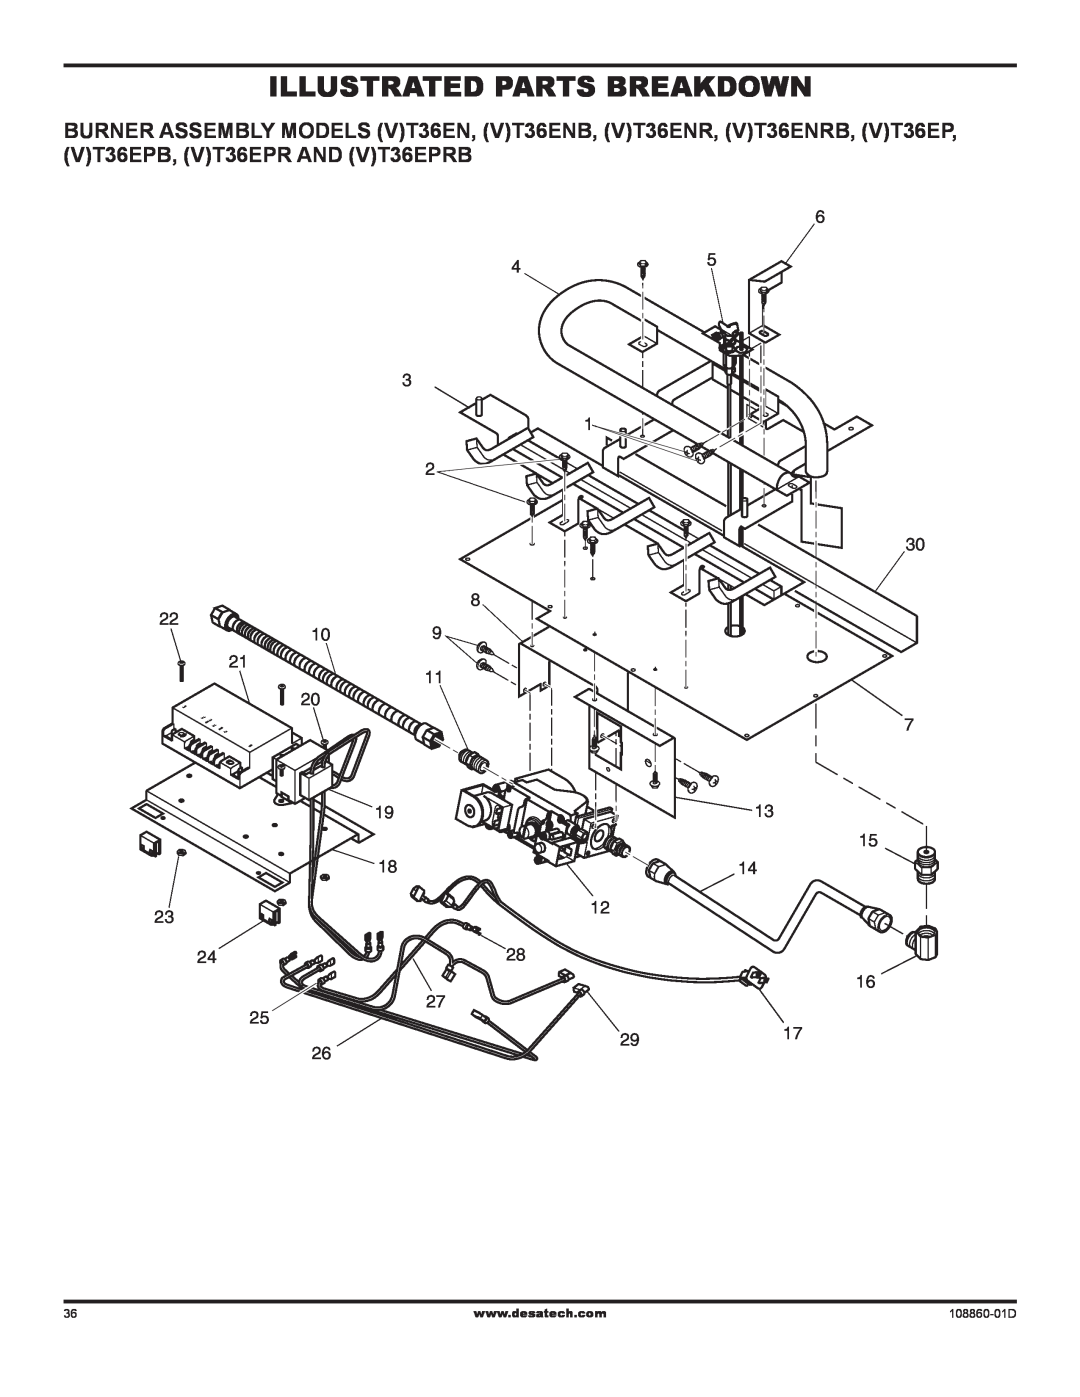 Desa (V)T32EN installation manual illustrated parts breakdown, 2917, 108860-01D 